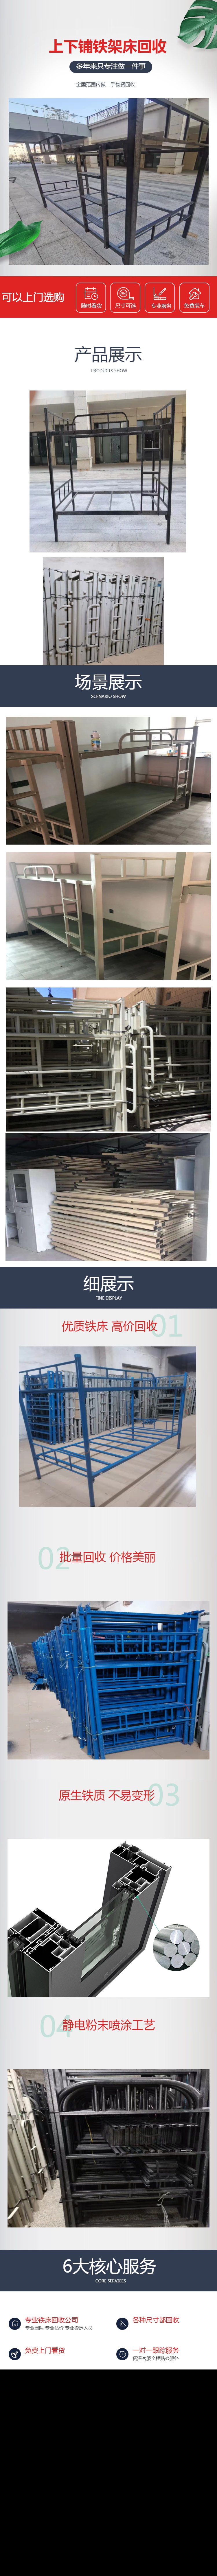 惠州铁床回收公司 中山铁床回收价格